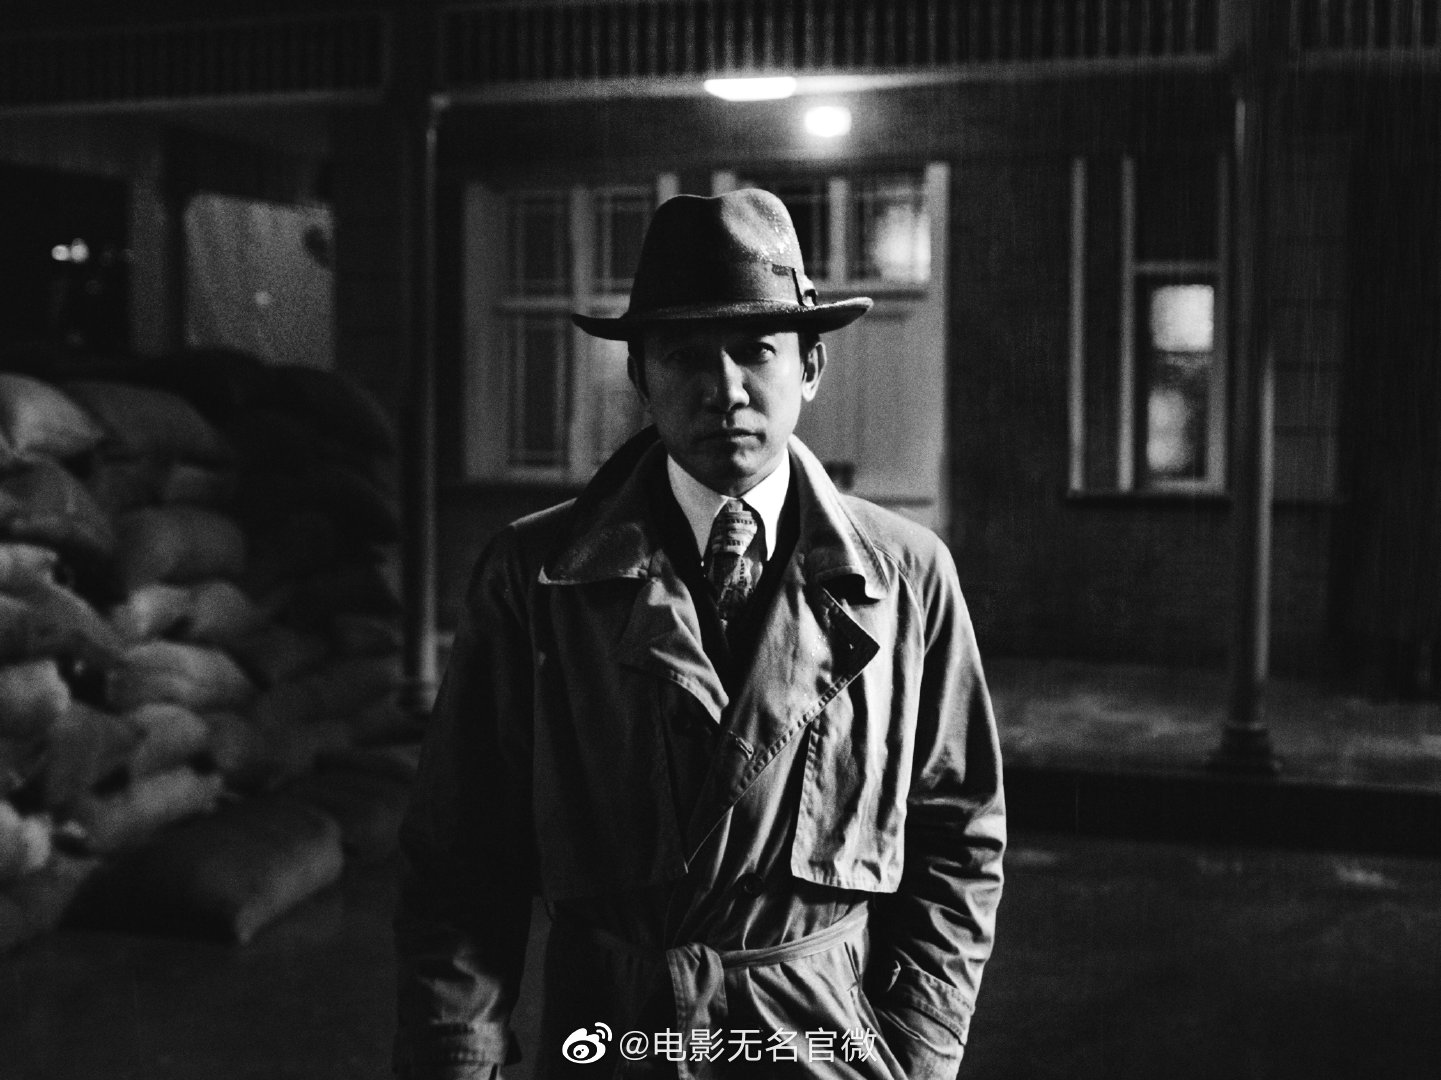 Vô Danh: Công bố teaser mới nhất, hé lộ tạo hình đầu tiên của dàn diễn viên chính Lương Triều Vỹ, Vương Nhất Bác, Vương Truyền Quân - Ảnh 5